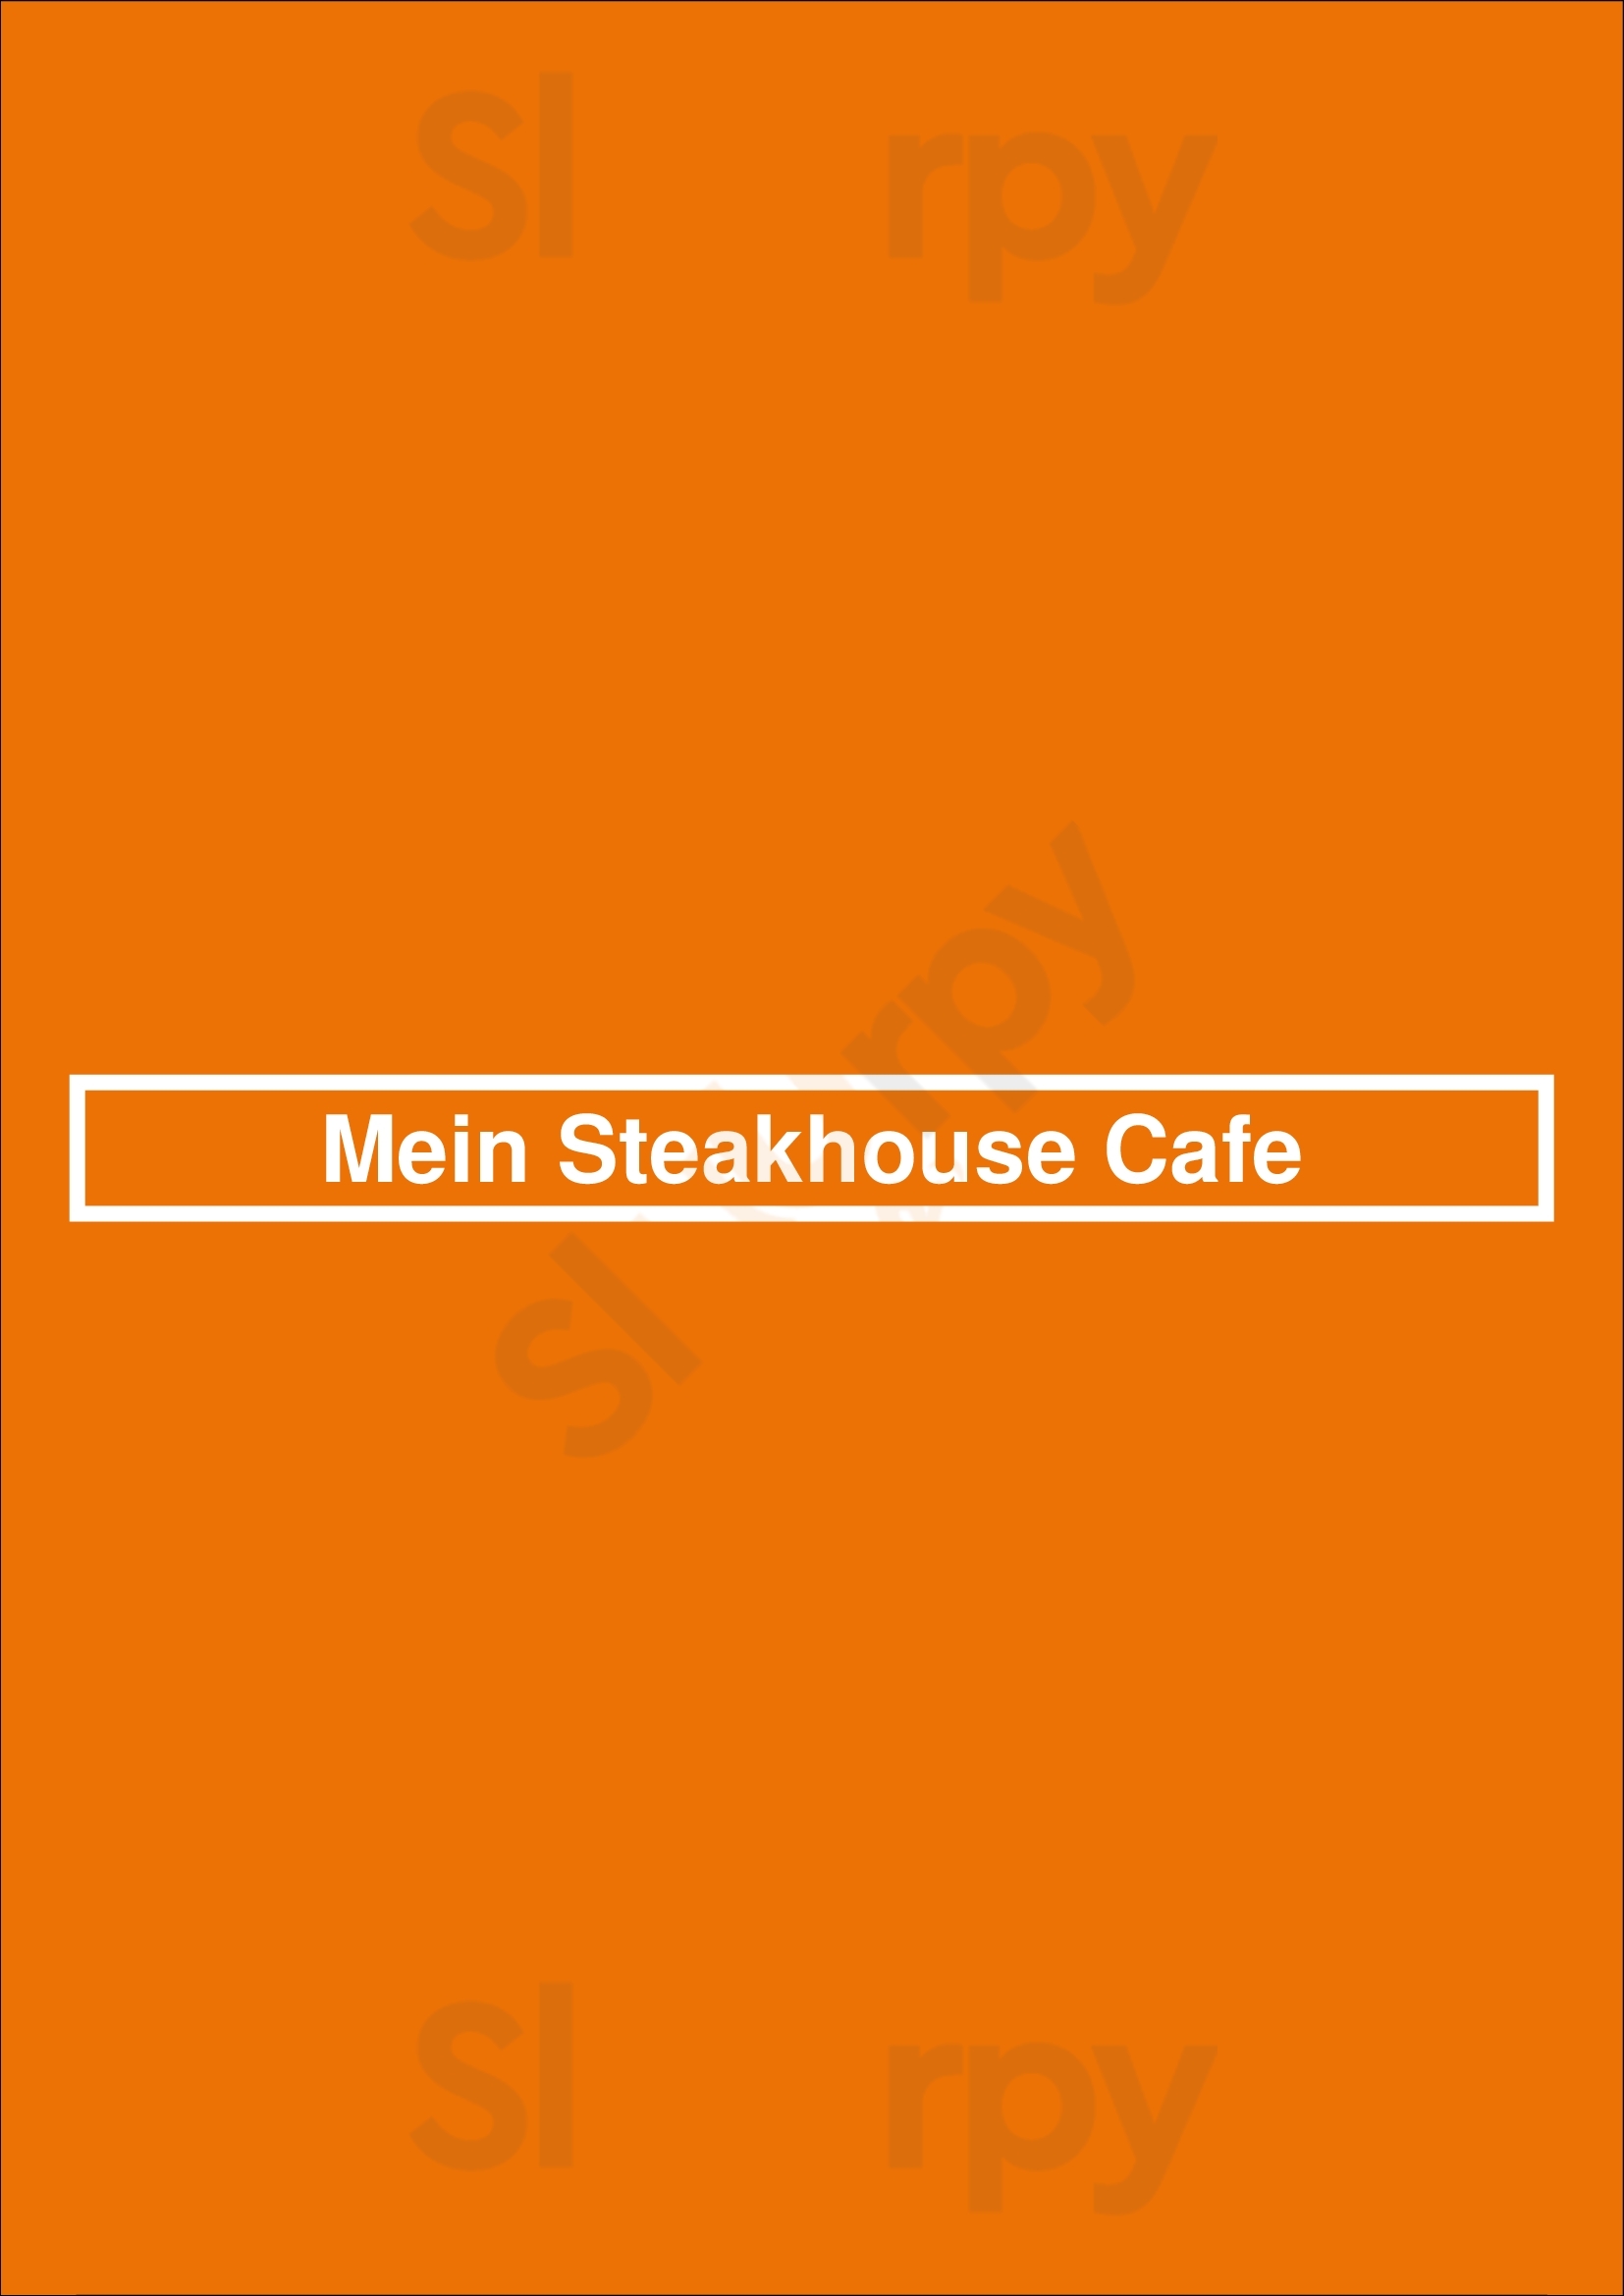 Mein Steakhouse Cafe Sankt Peter-Ording Menu - 1